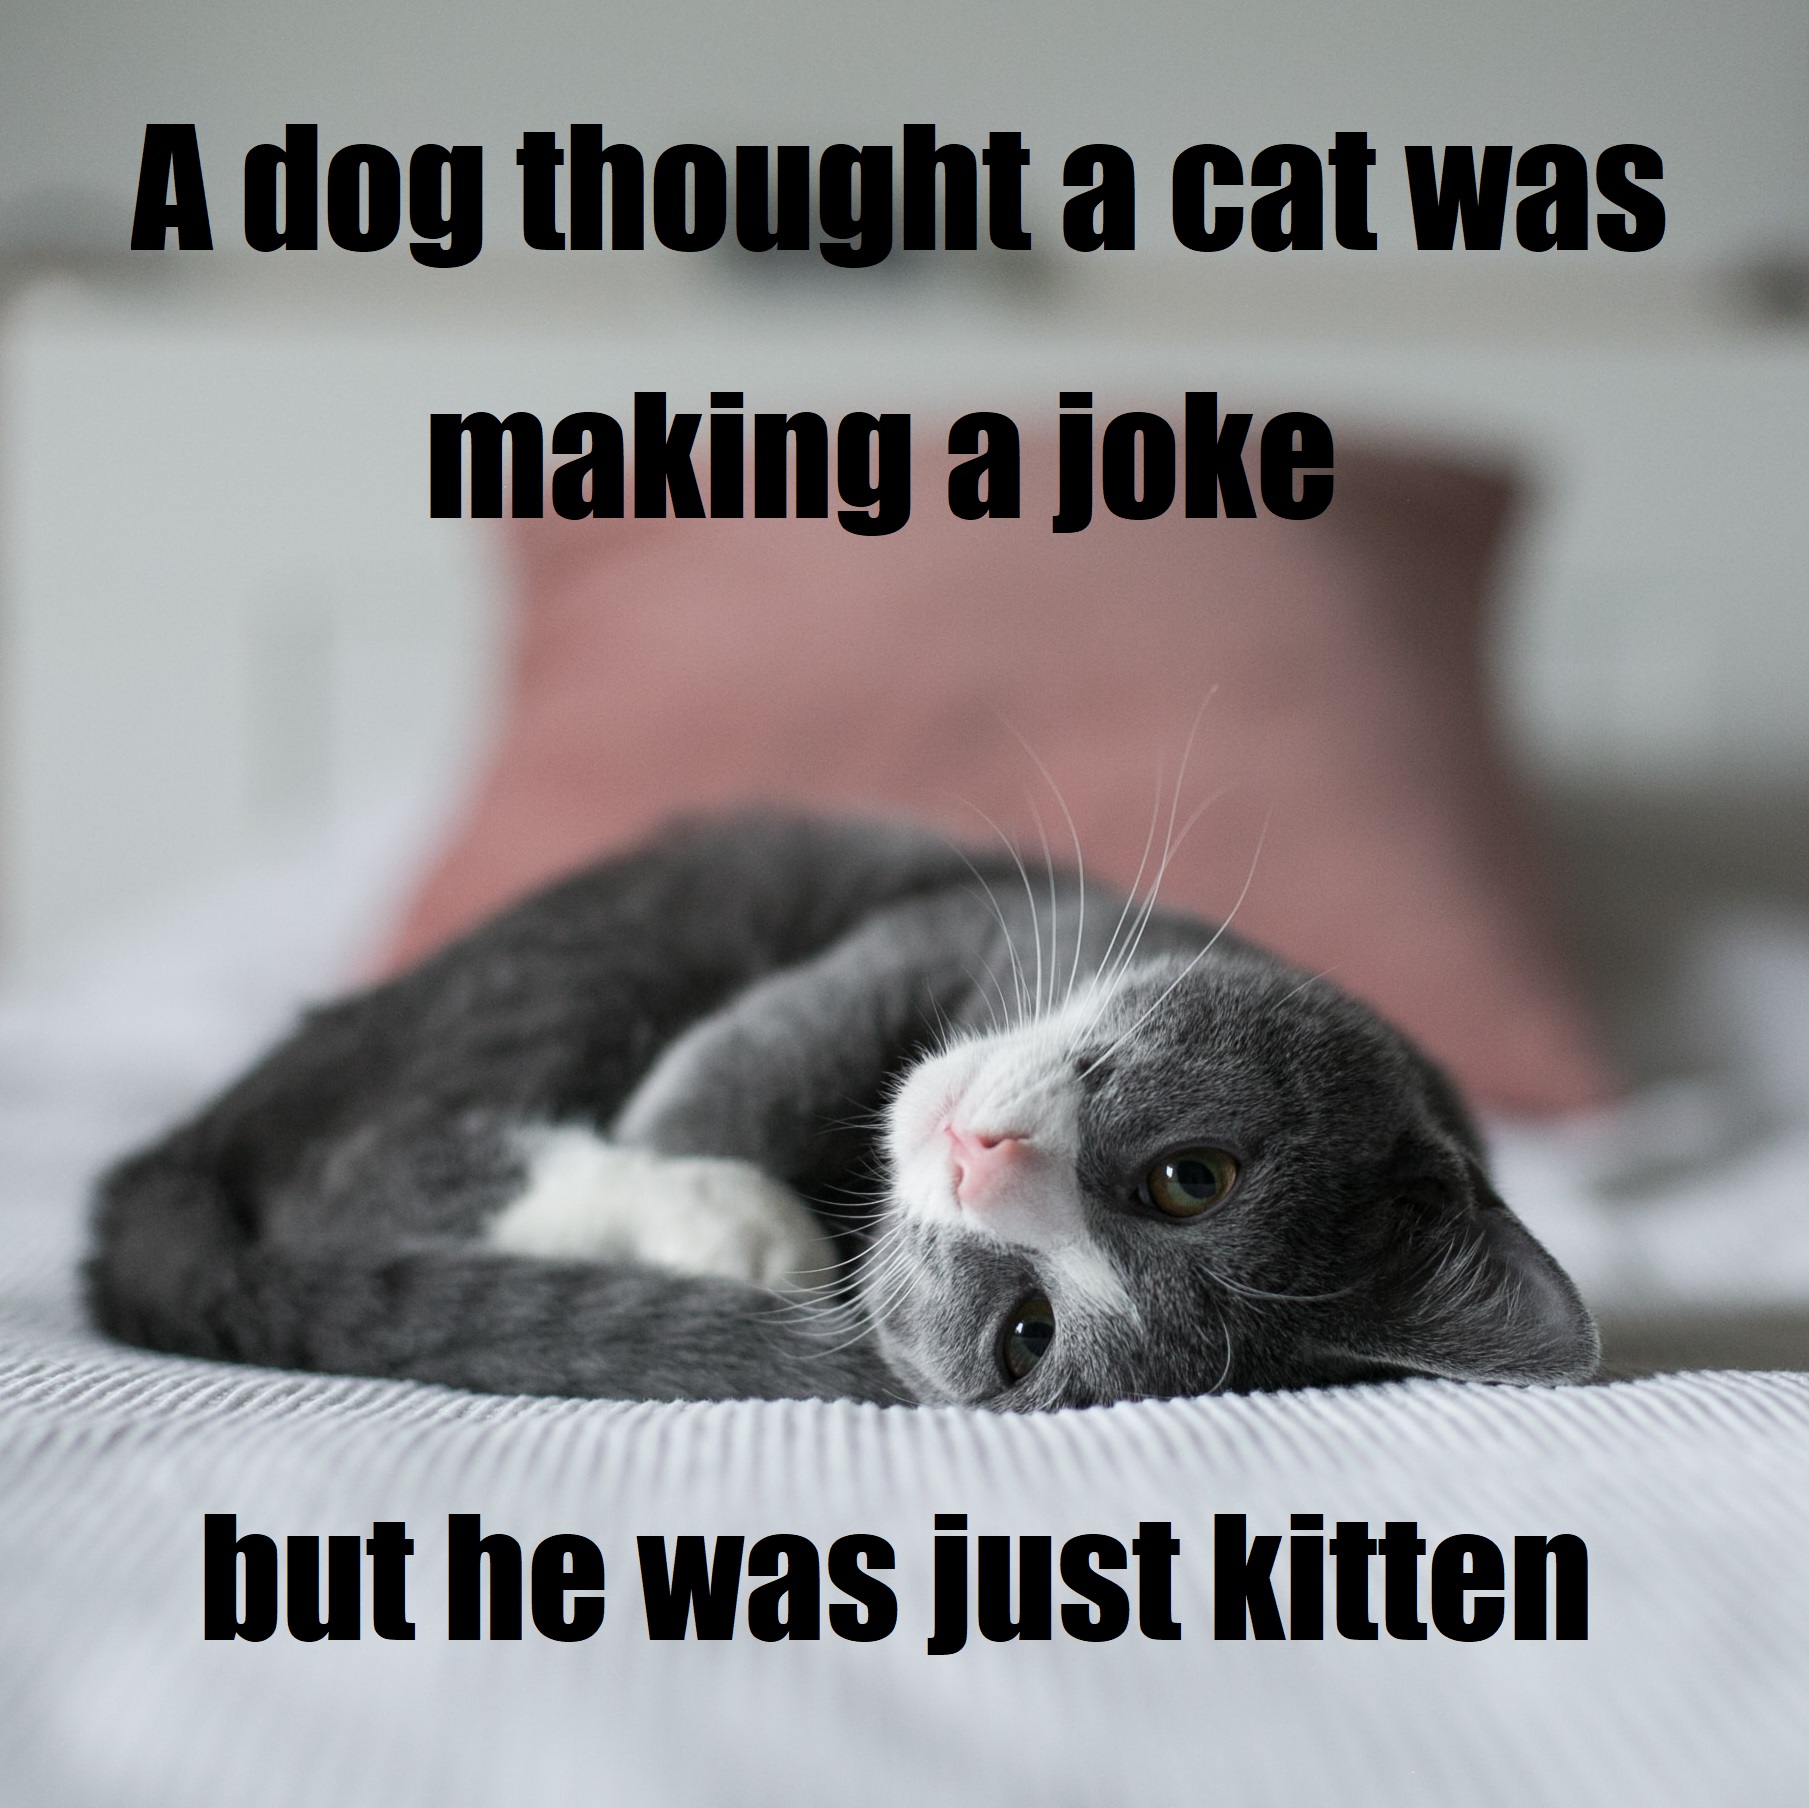 Cat was making a joke